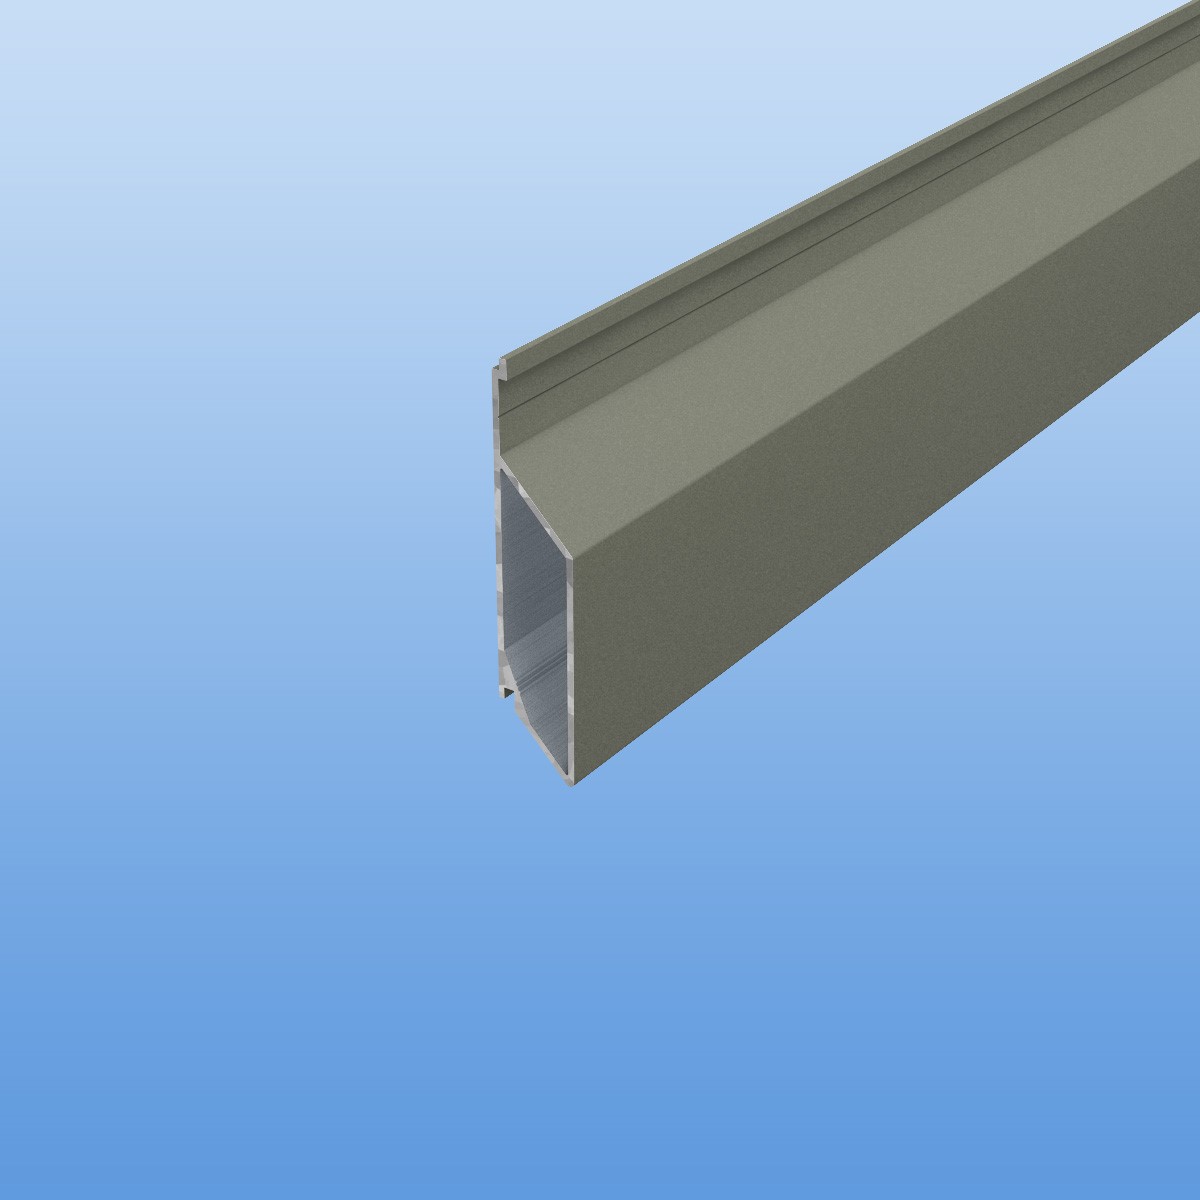 Rhombusprofil aus Aluminium 16mm mit Montagesteg in Grau (RAL 7030) - Sichtfläche 45mm